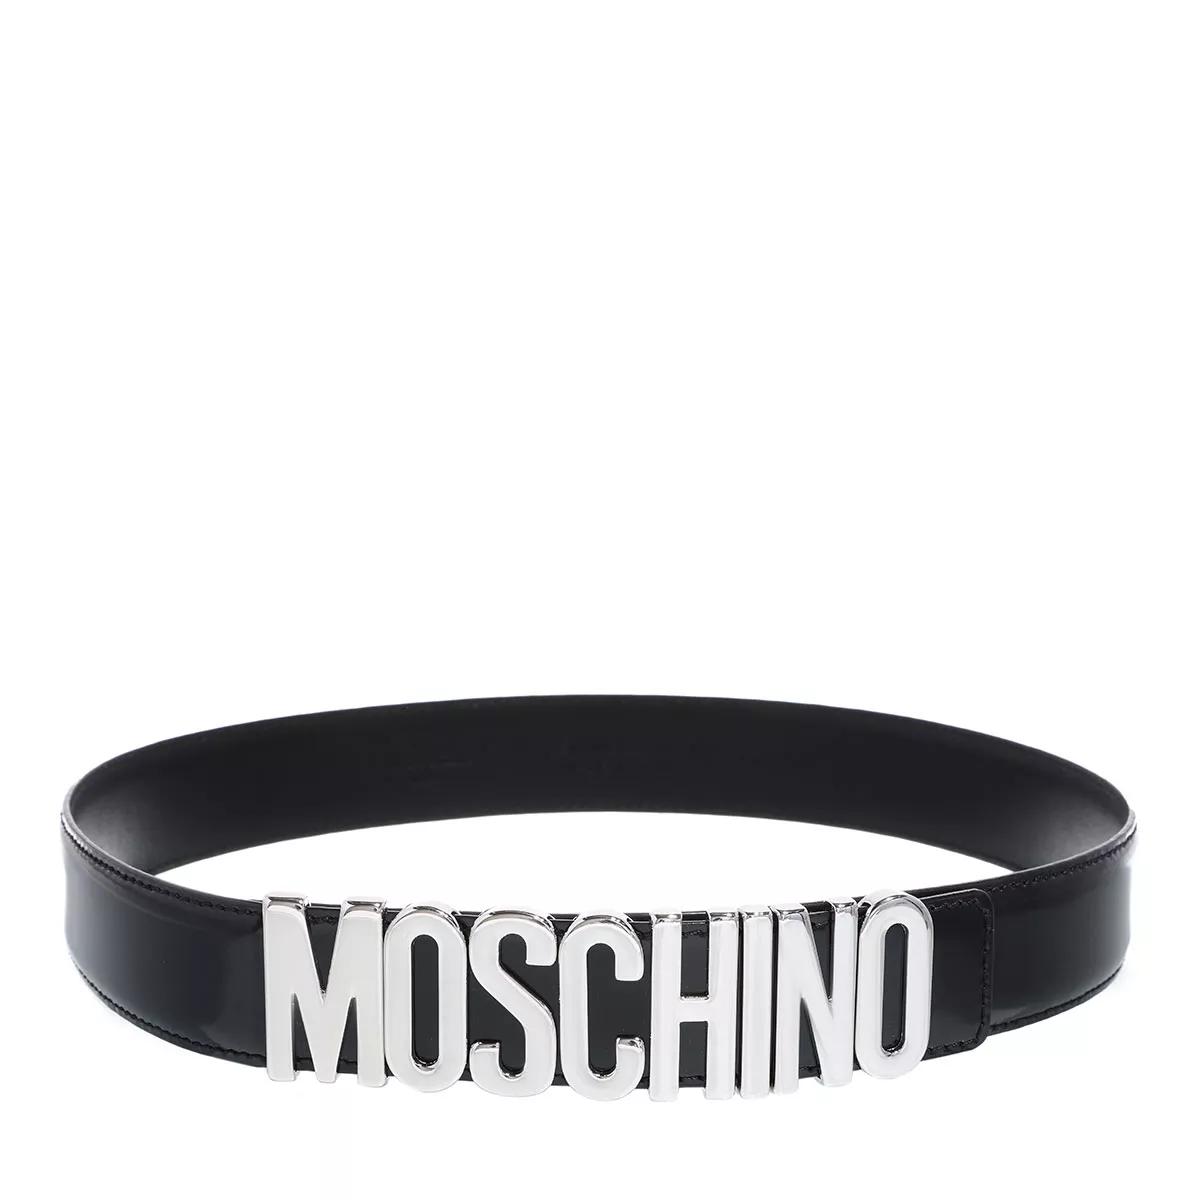 Moschino Gürtel - Belt - Gr. 80 - in Schwarz - für Damen von Moschino